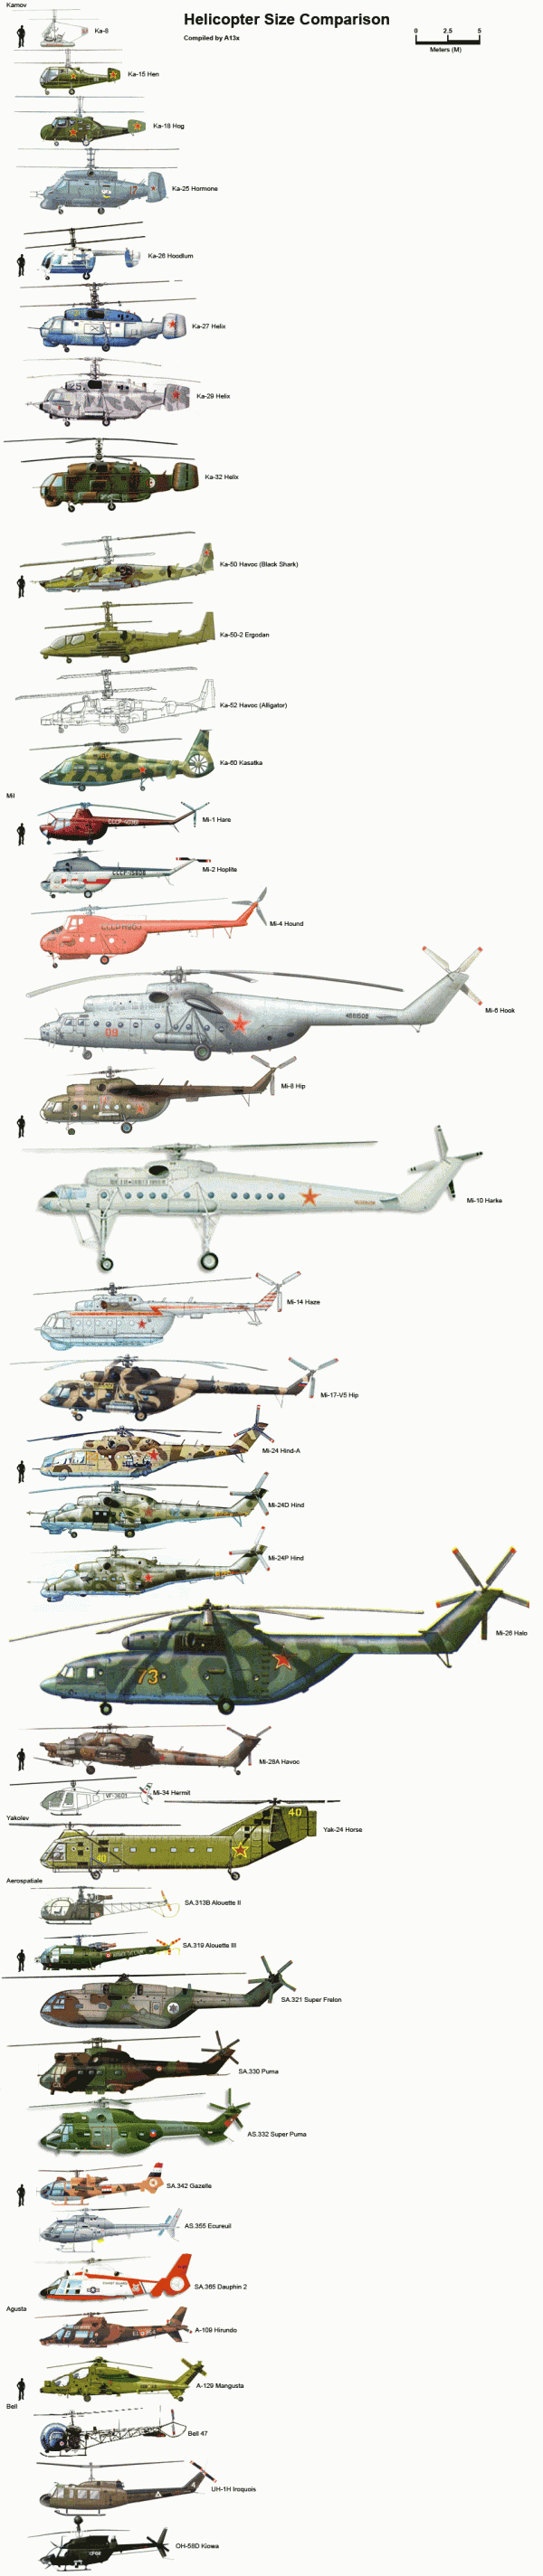 Comparativo em escala dos helicópteros